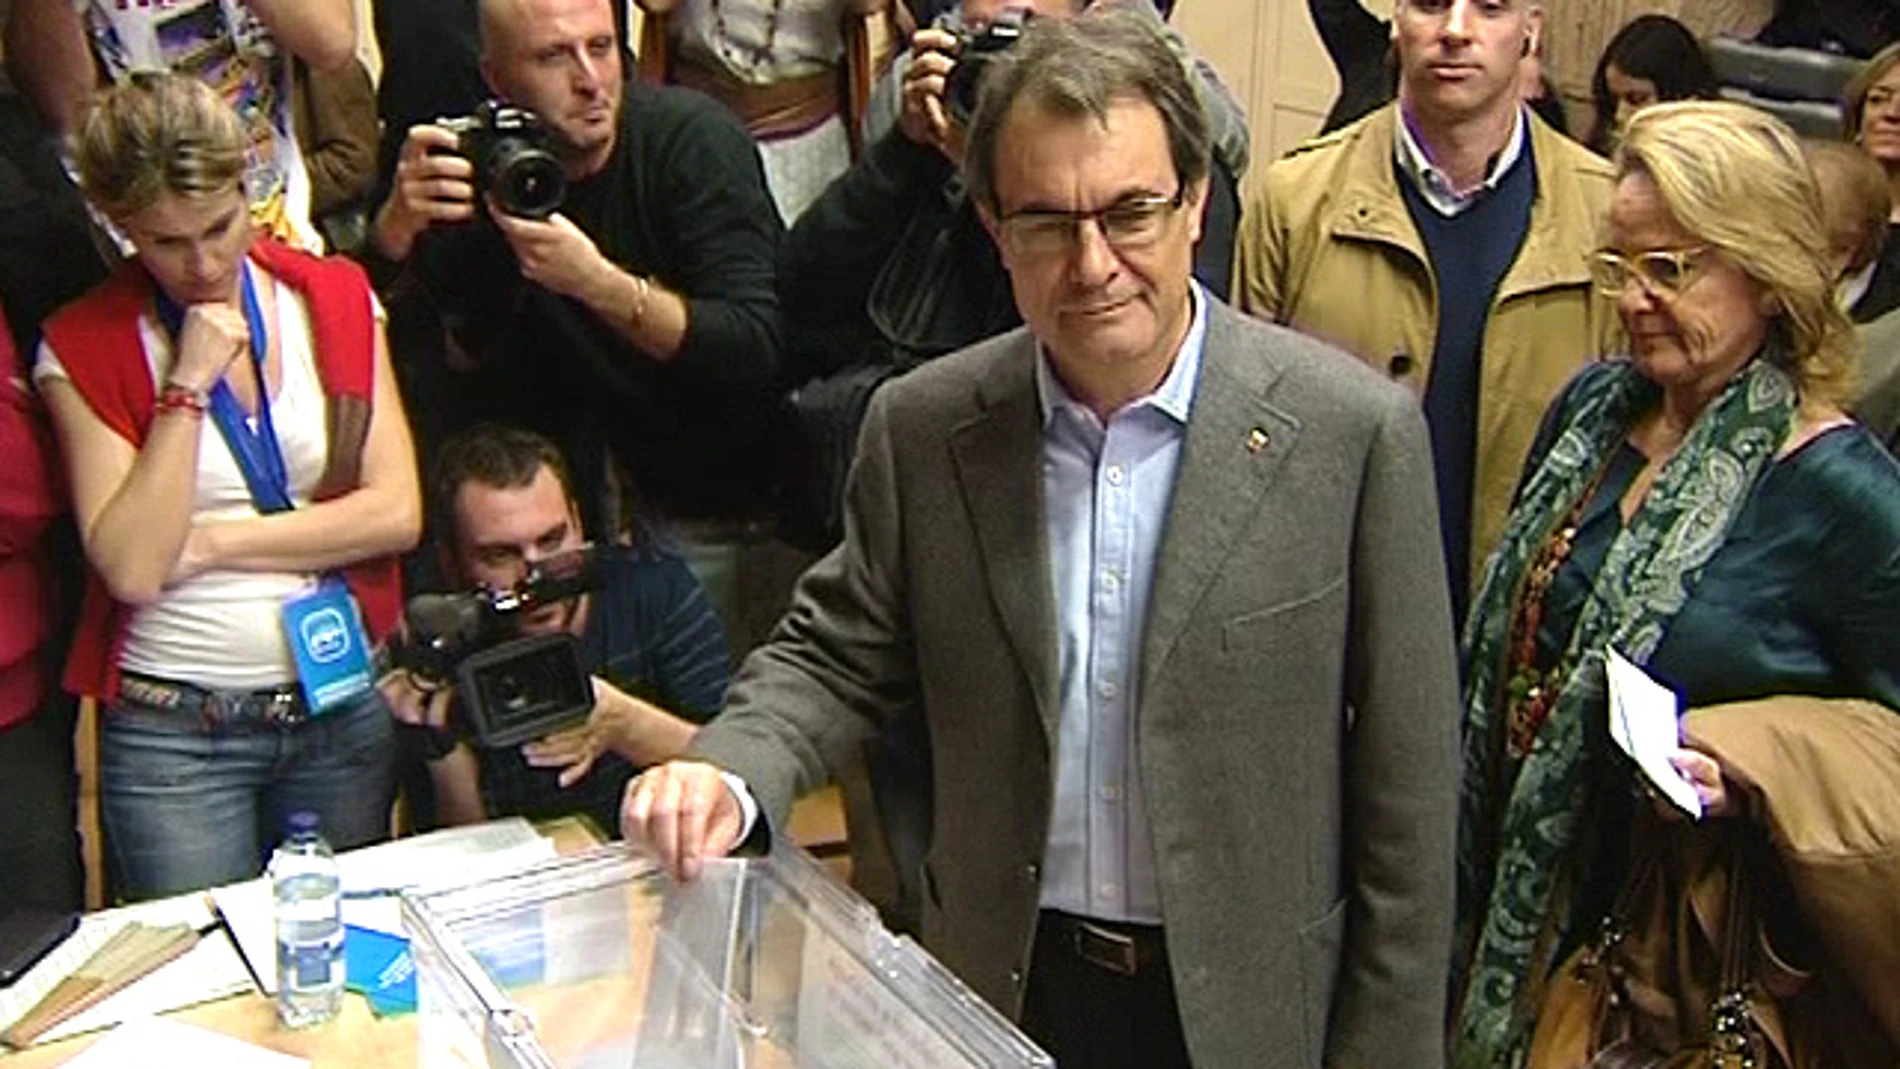 Artur Mas deposita su voto en la urna